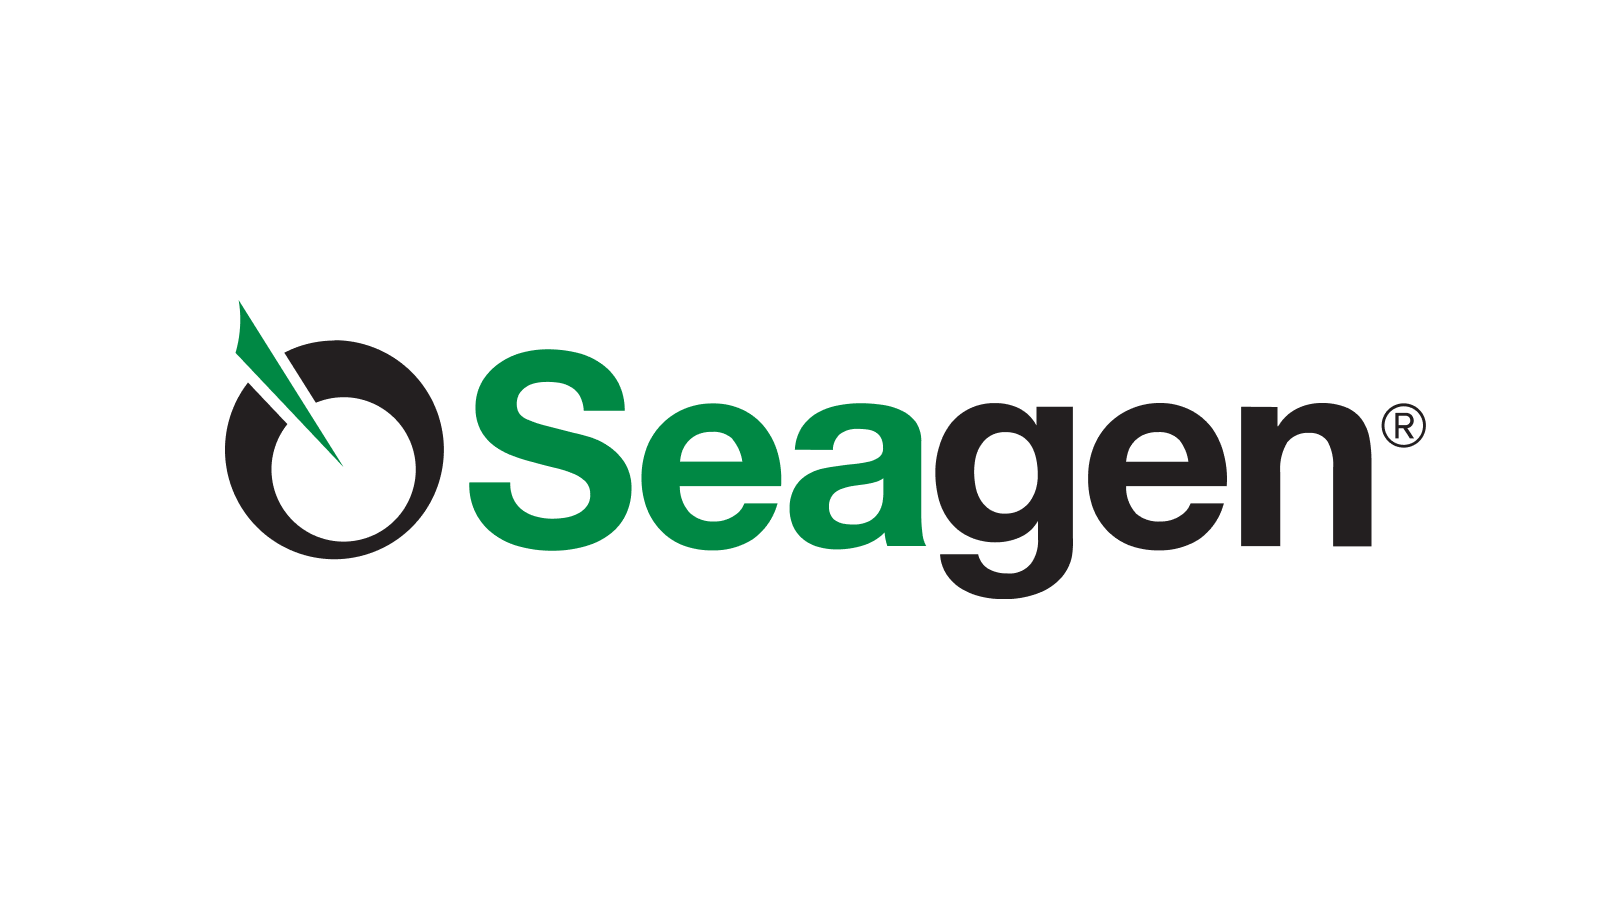 seagen logo